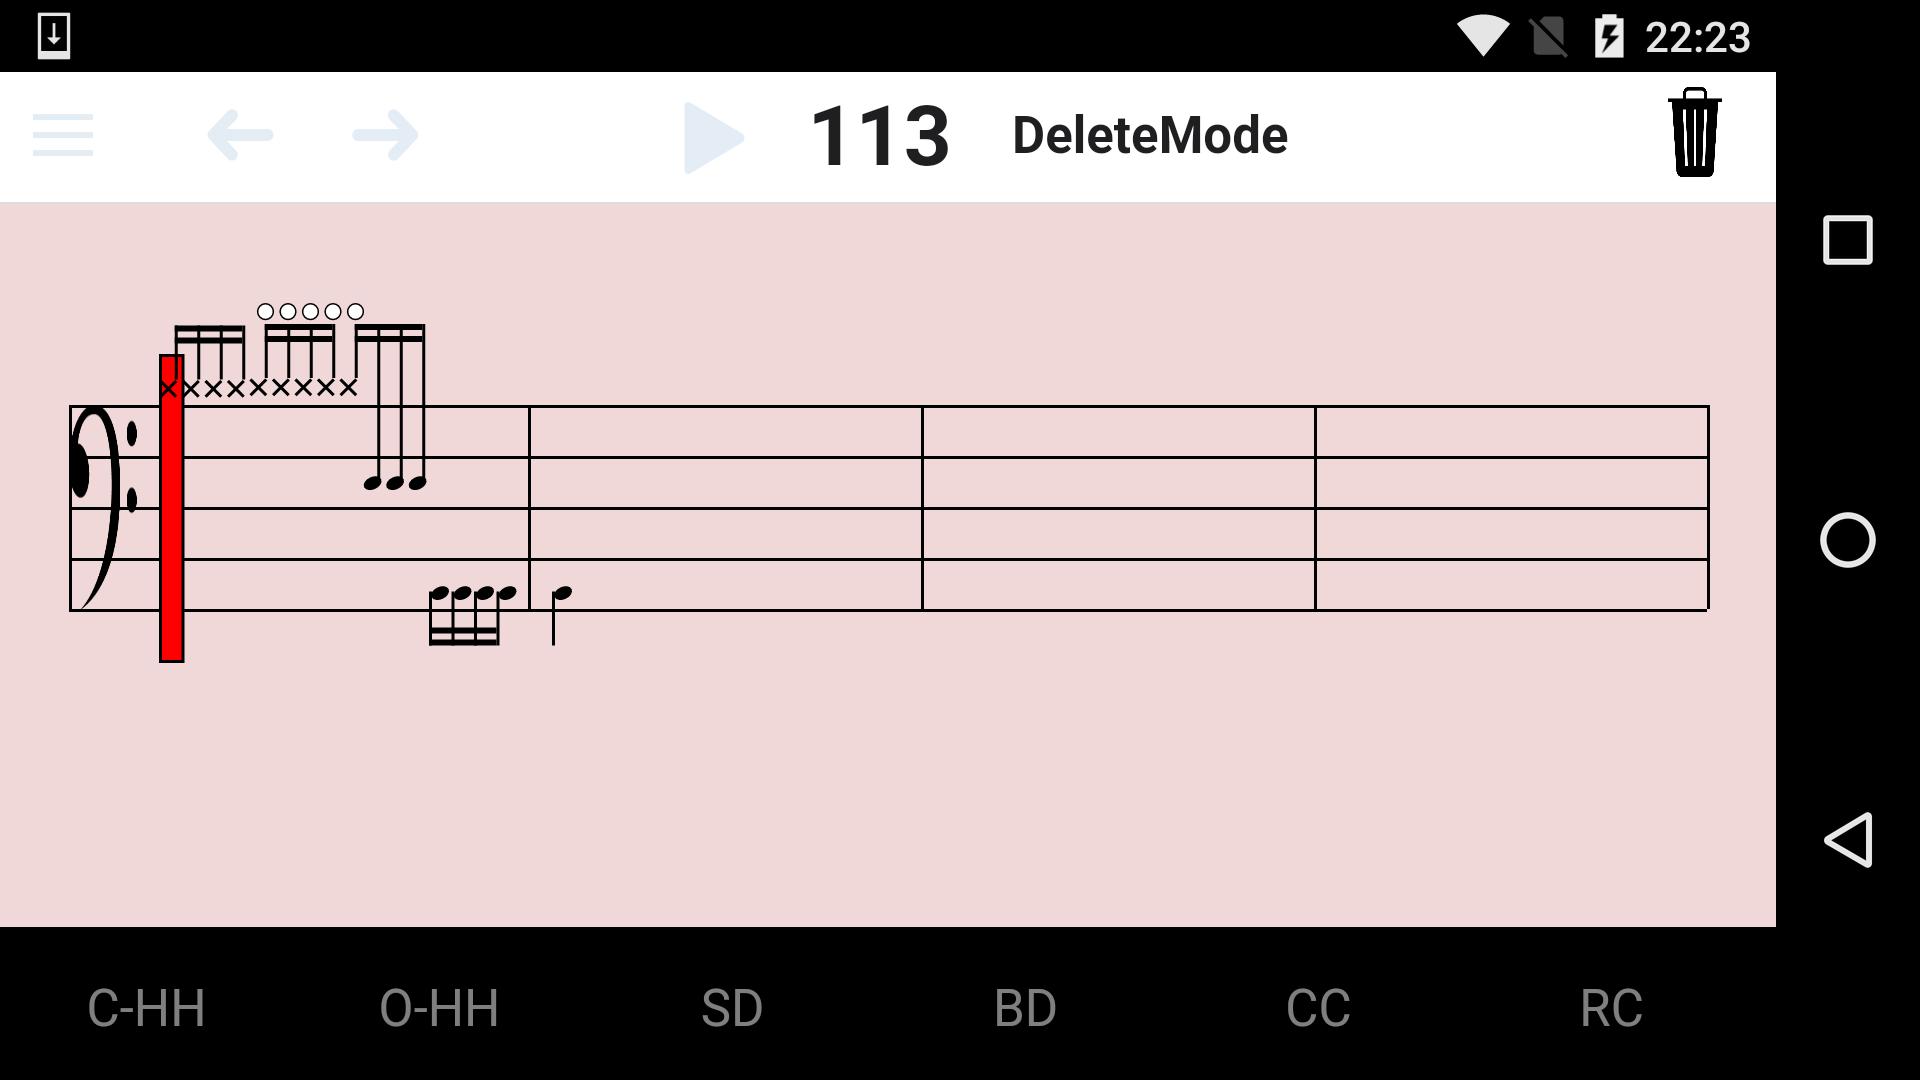 Android 用の ドラム譜作成アプリ Dscore Apk をダウンロード